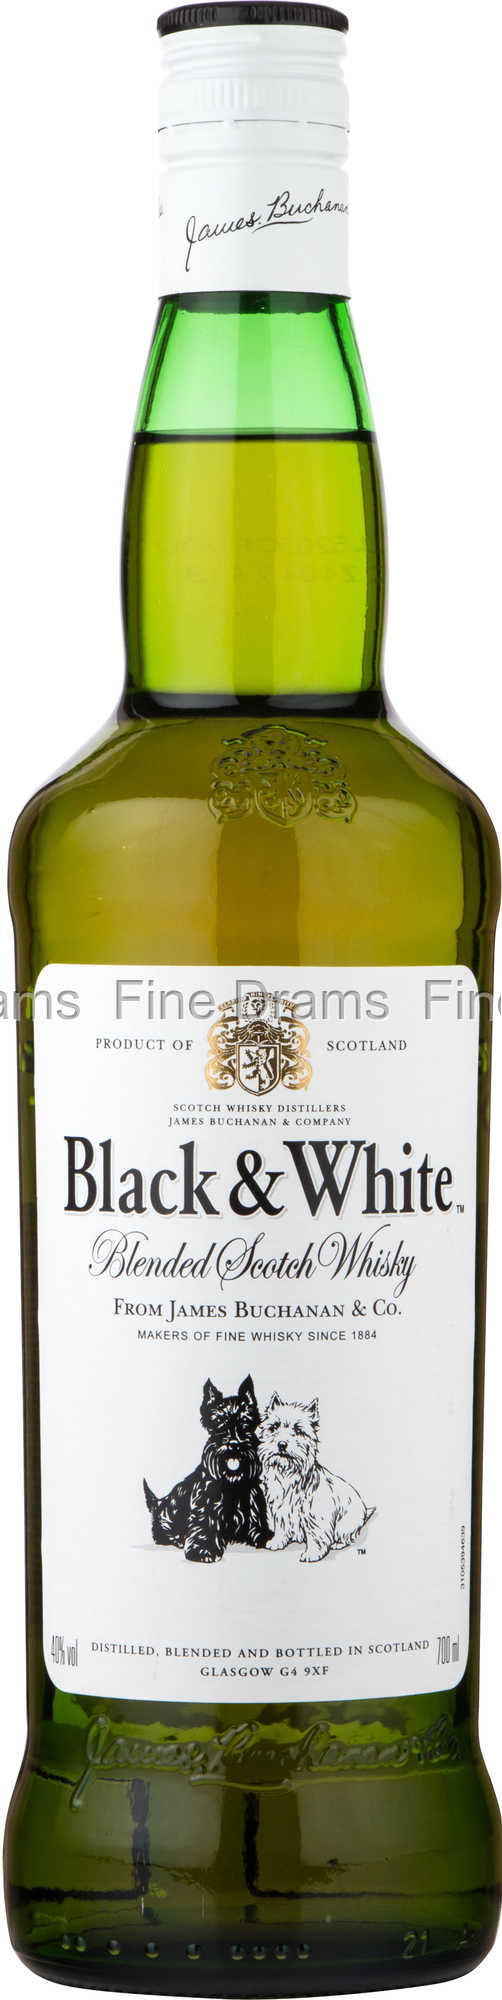 Black & White - Old Bottling - Passion for Whisky